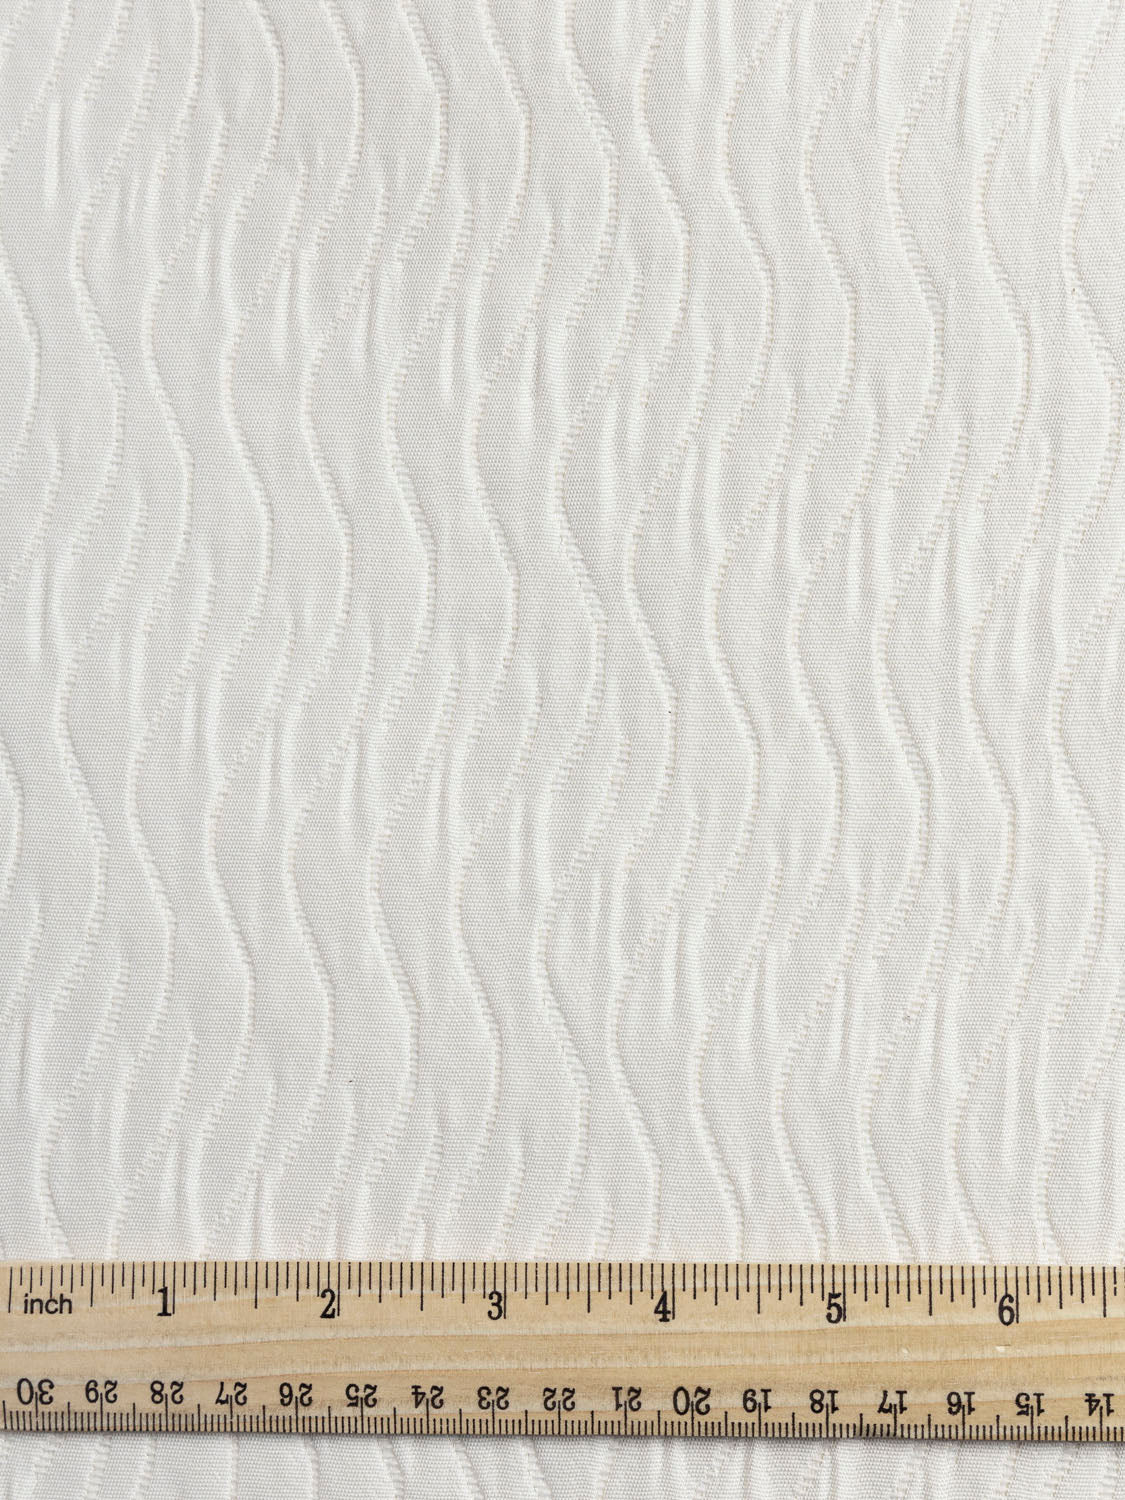 cream cotton fabric texture